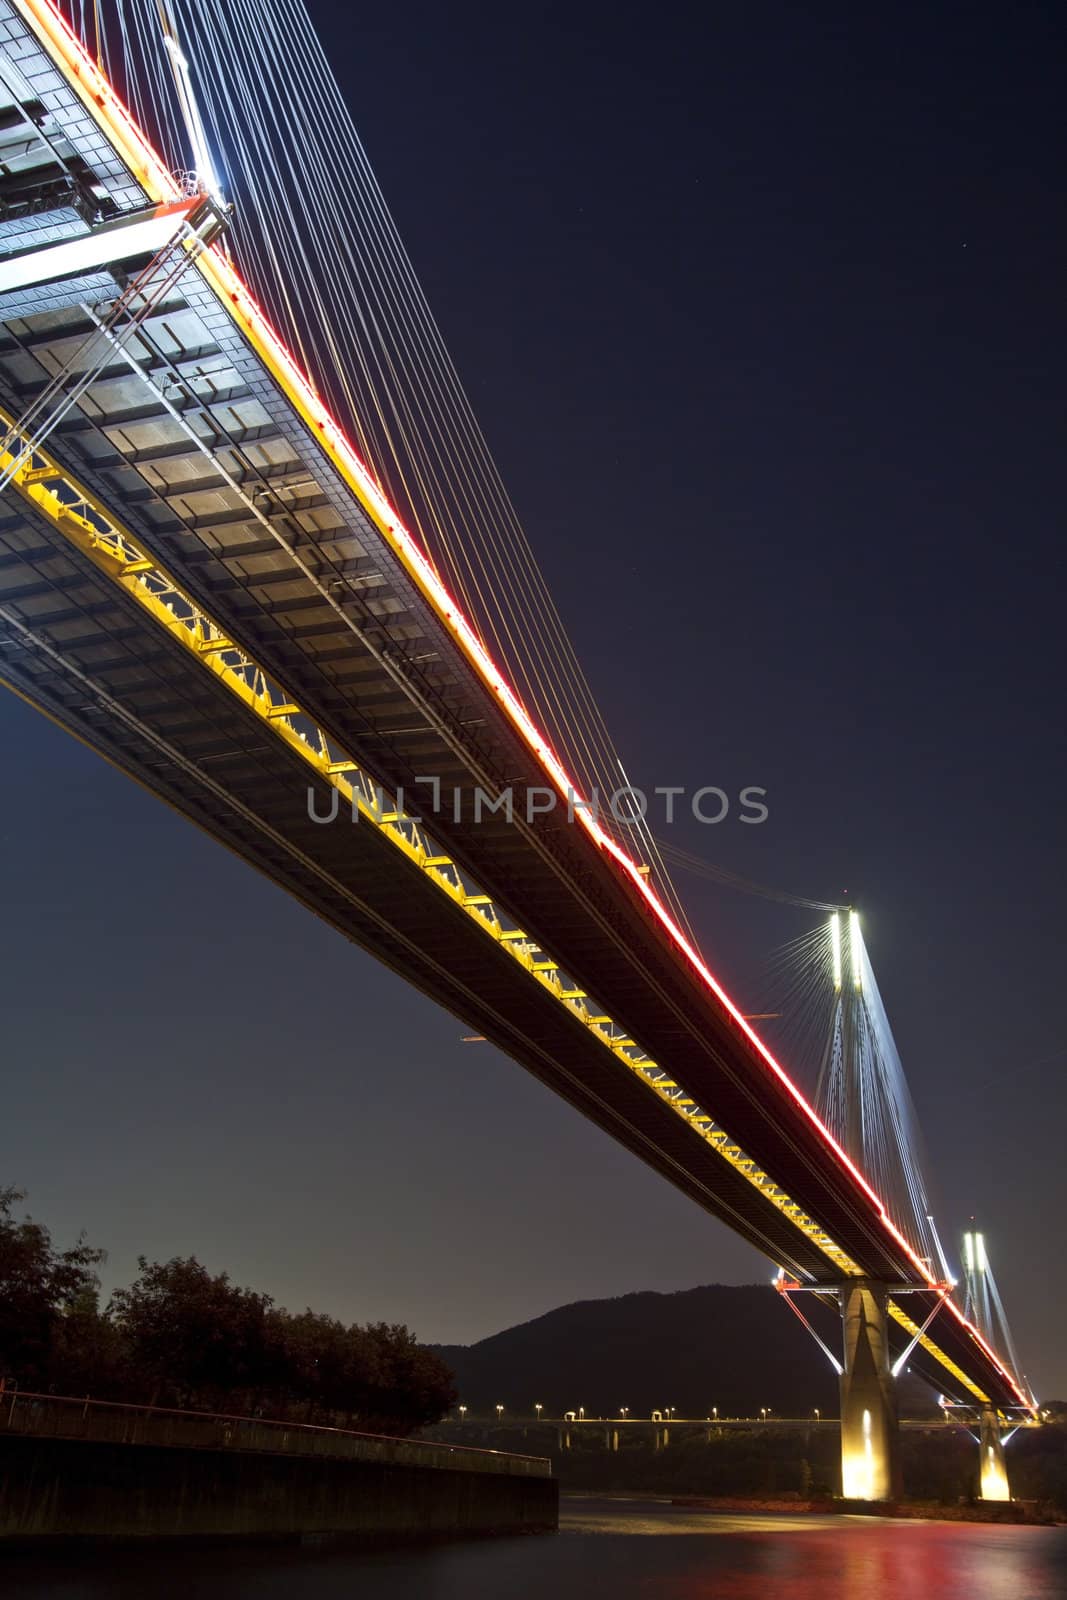 Ting Kau Bridge in Hong Kong at night by kawing921